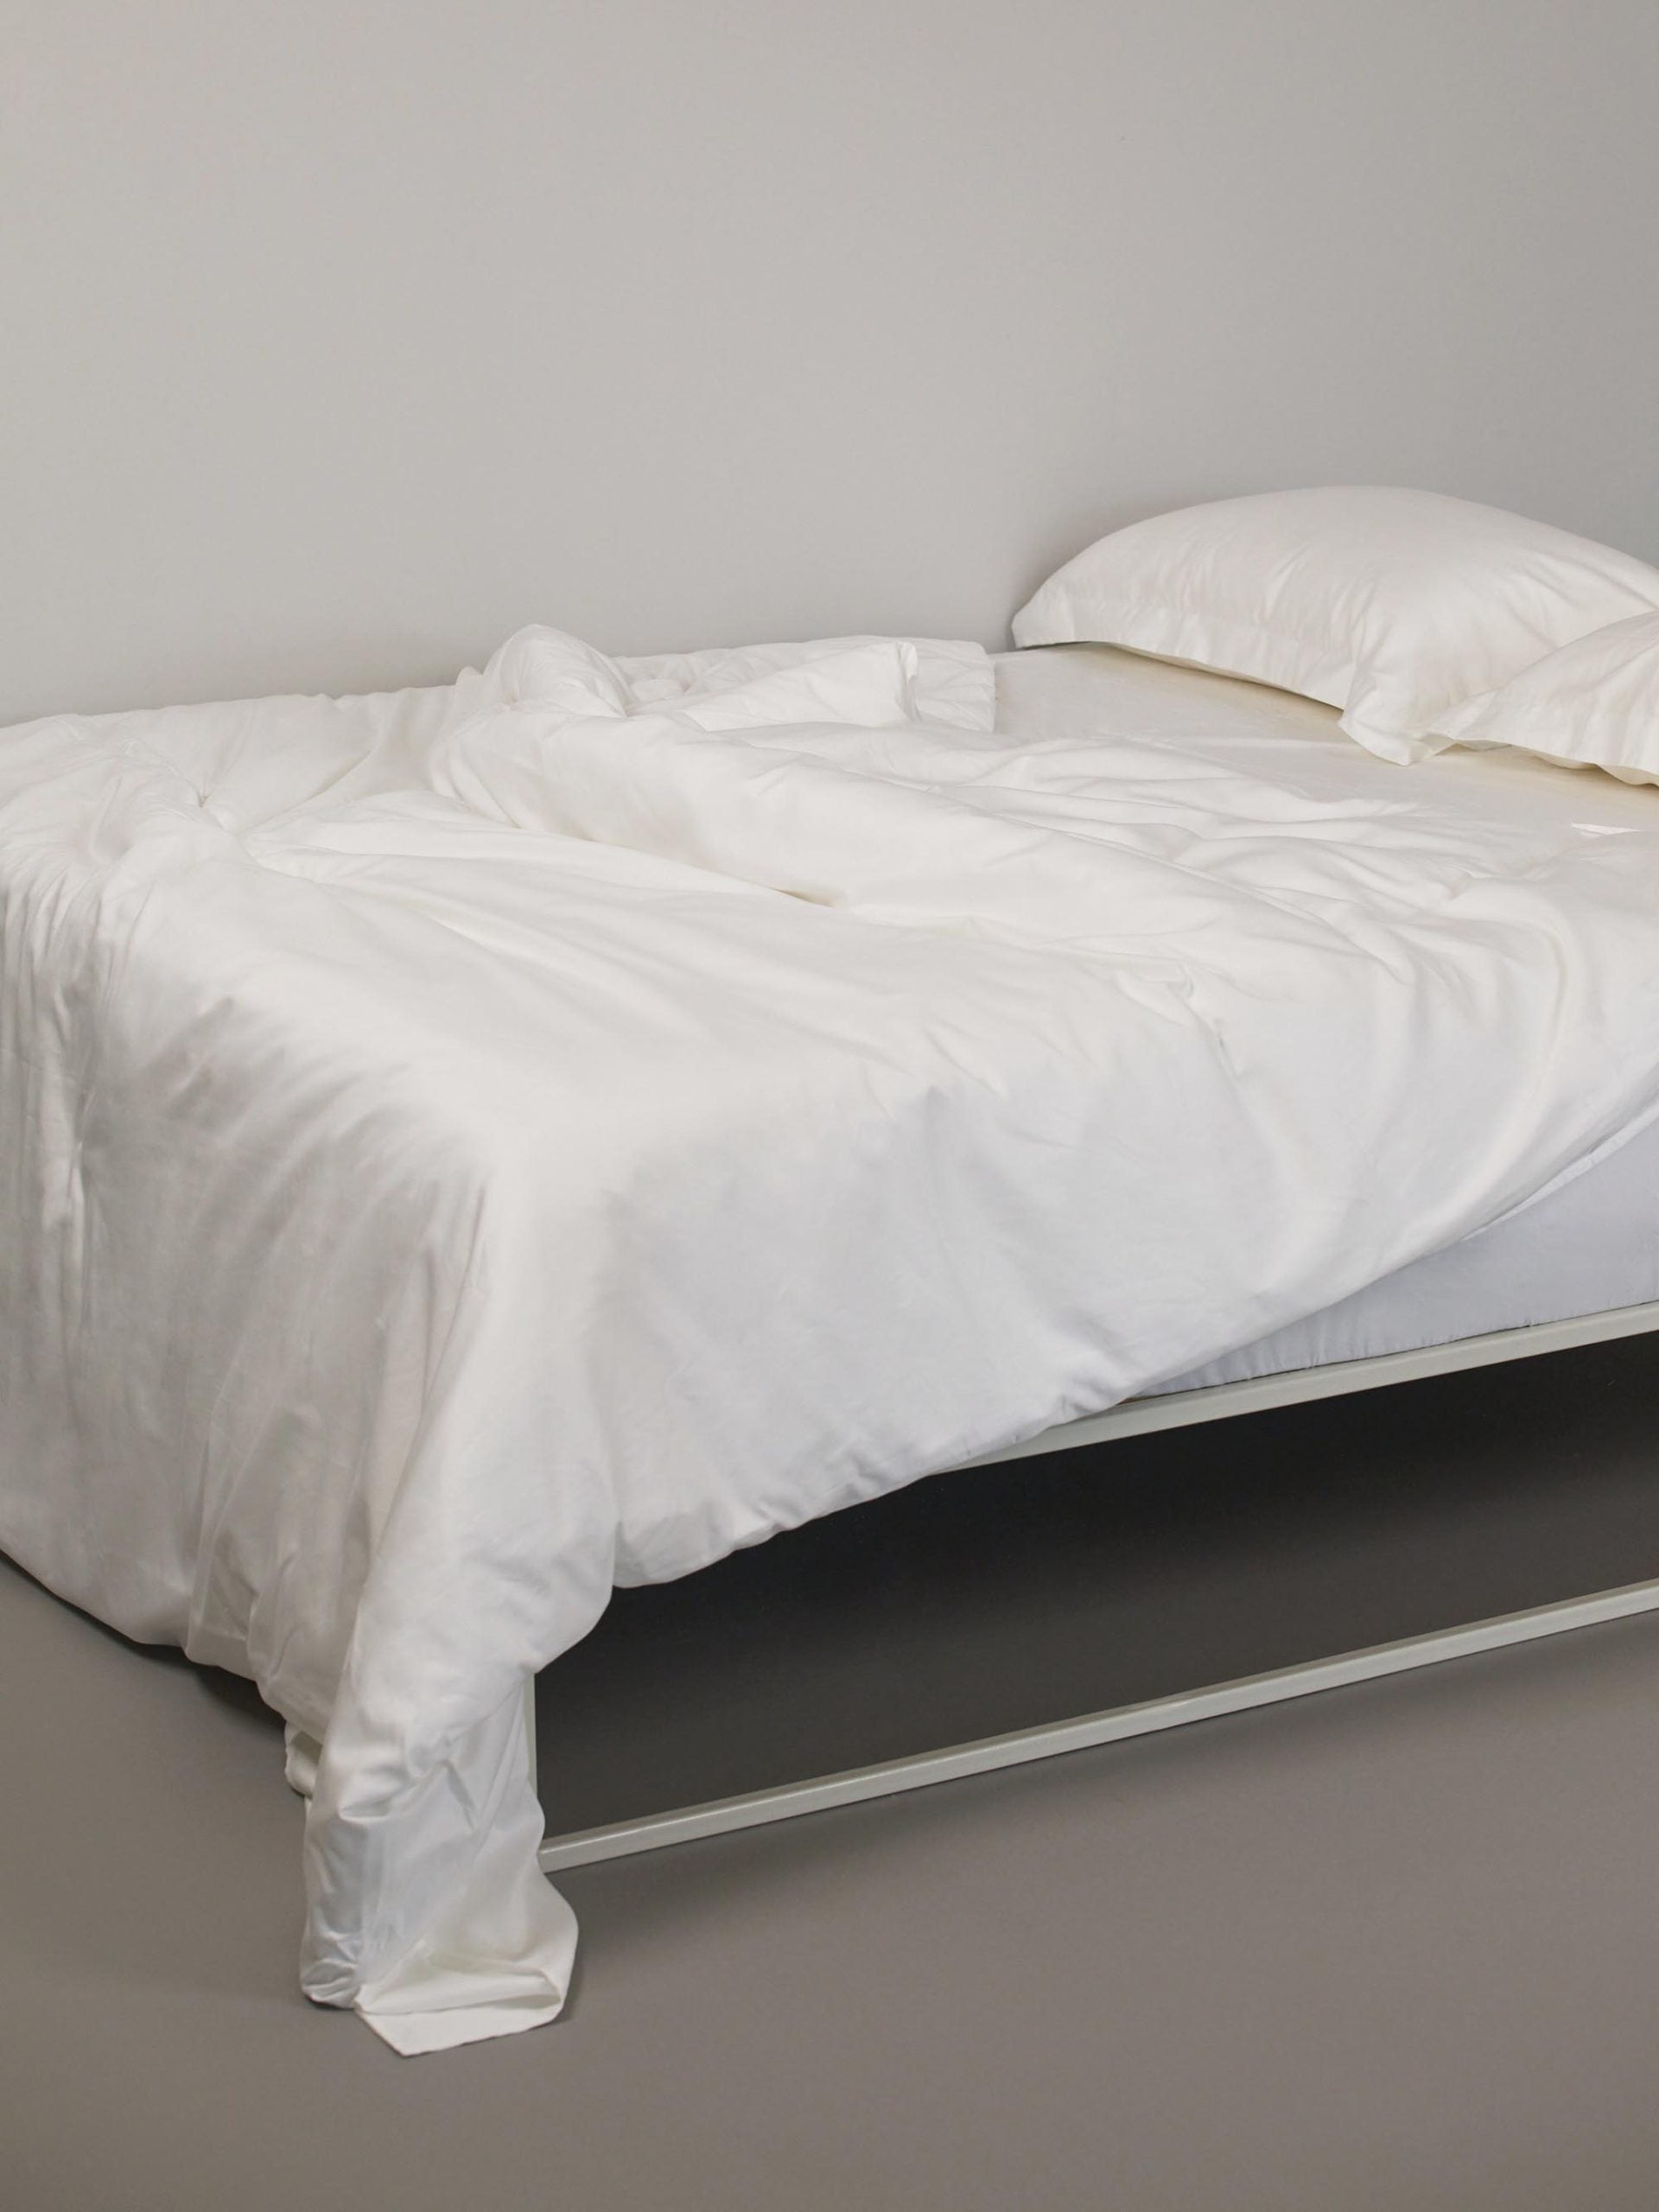 סדין זוגי מסאטן, שמיכת פוך וכרית ארוכה על מיטת ברזל לבנה